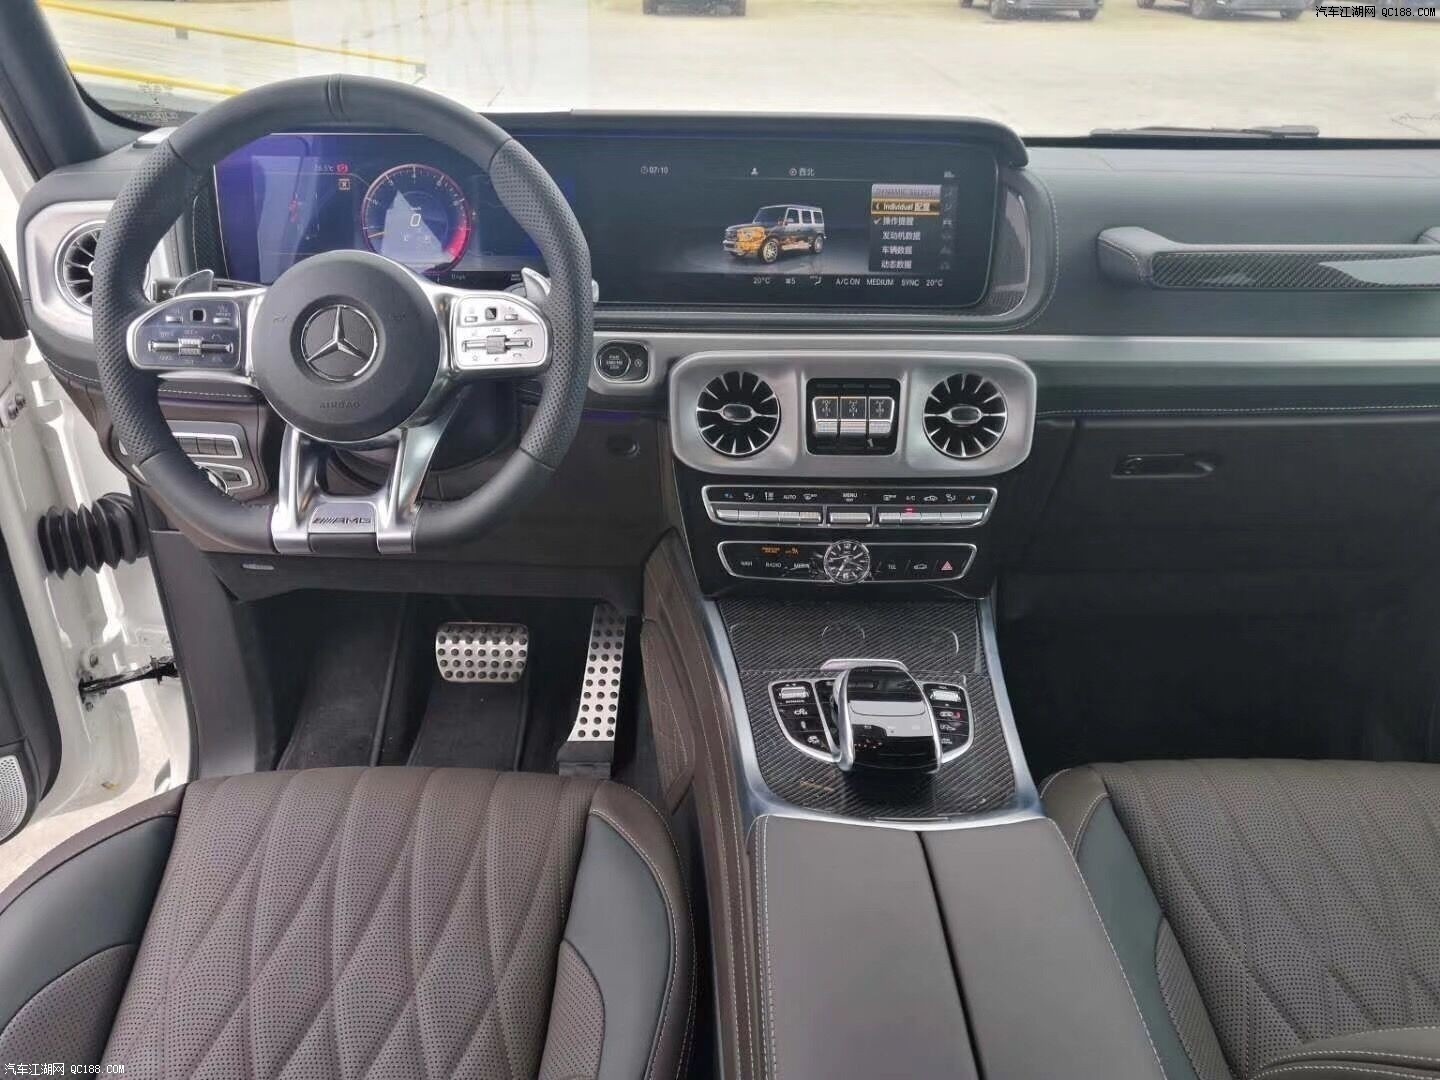 2019款奔驰G63AMG全新大屏驾乘空间进行优化